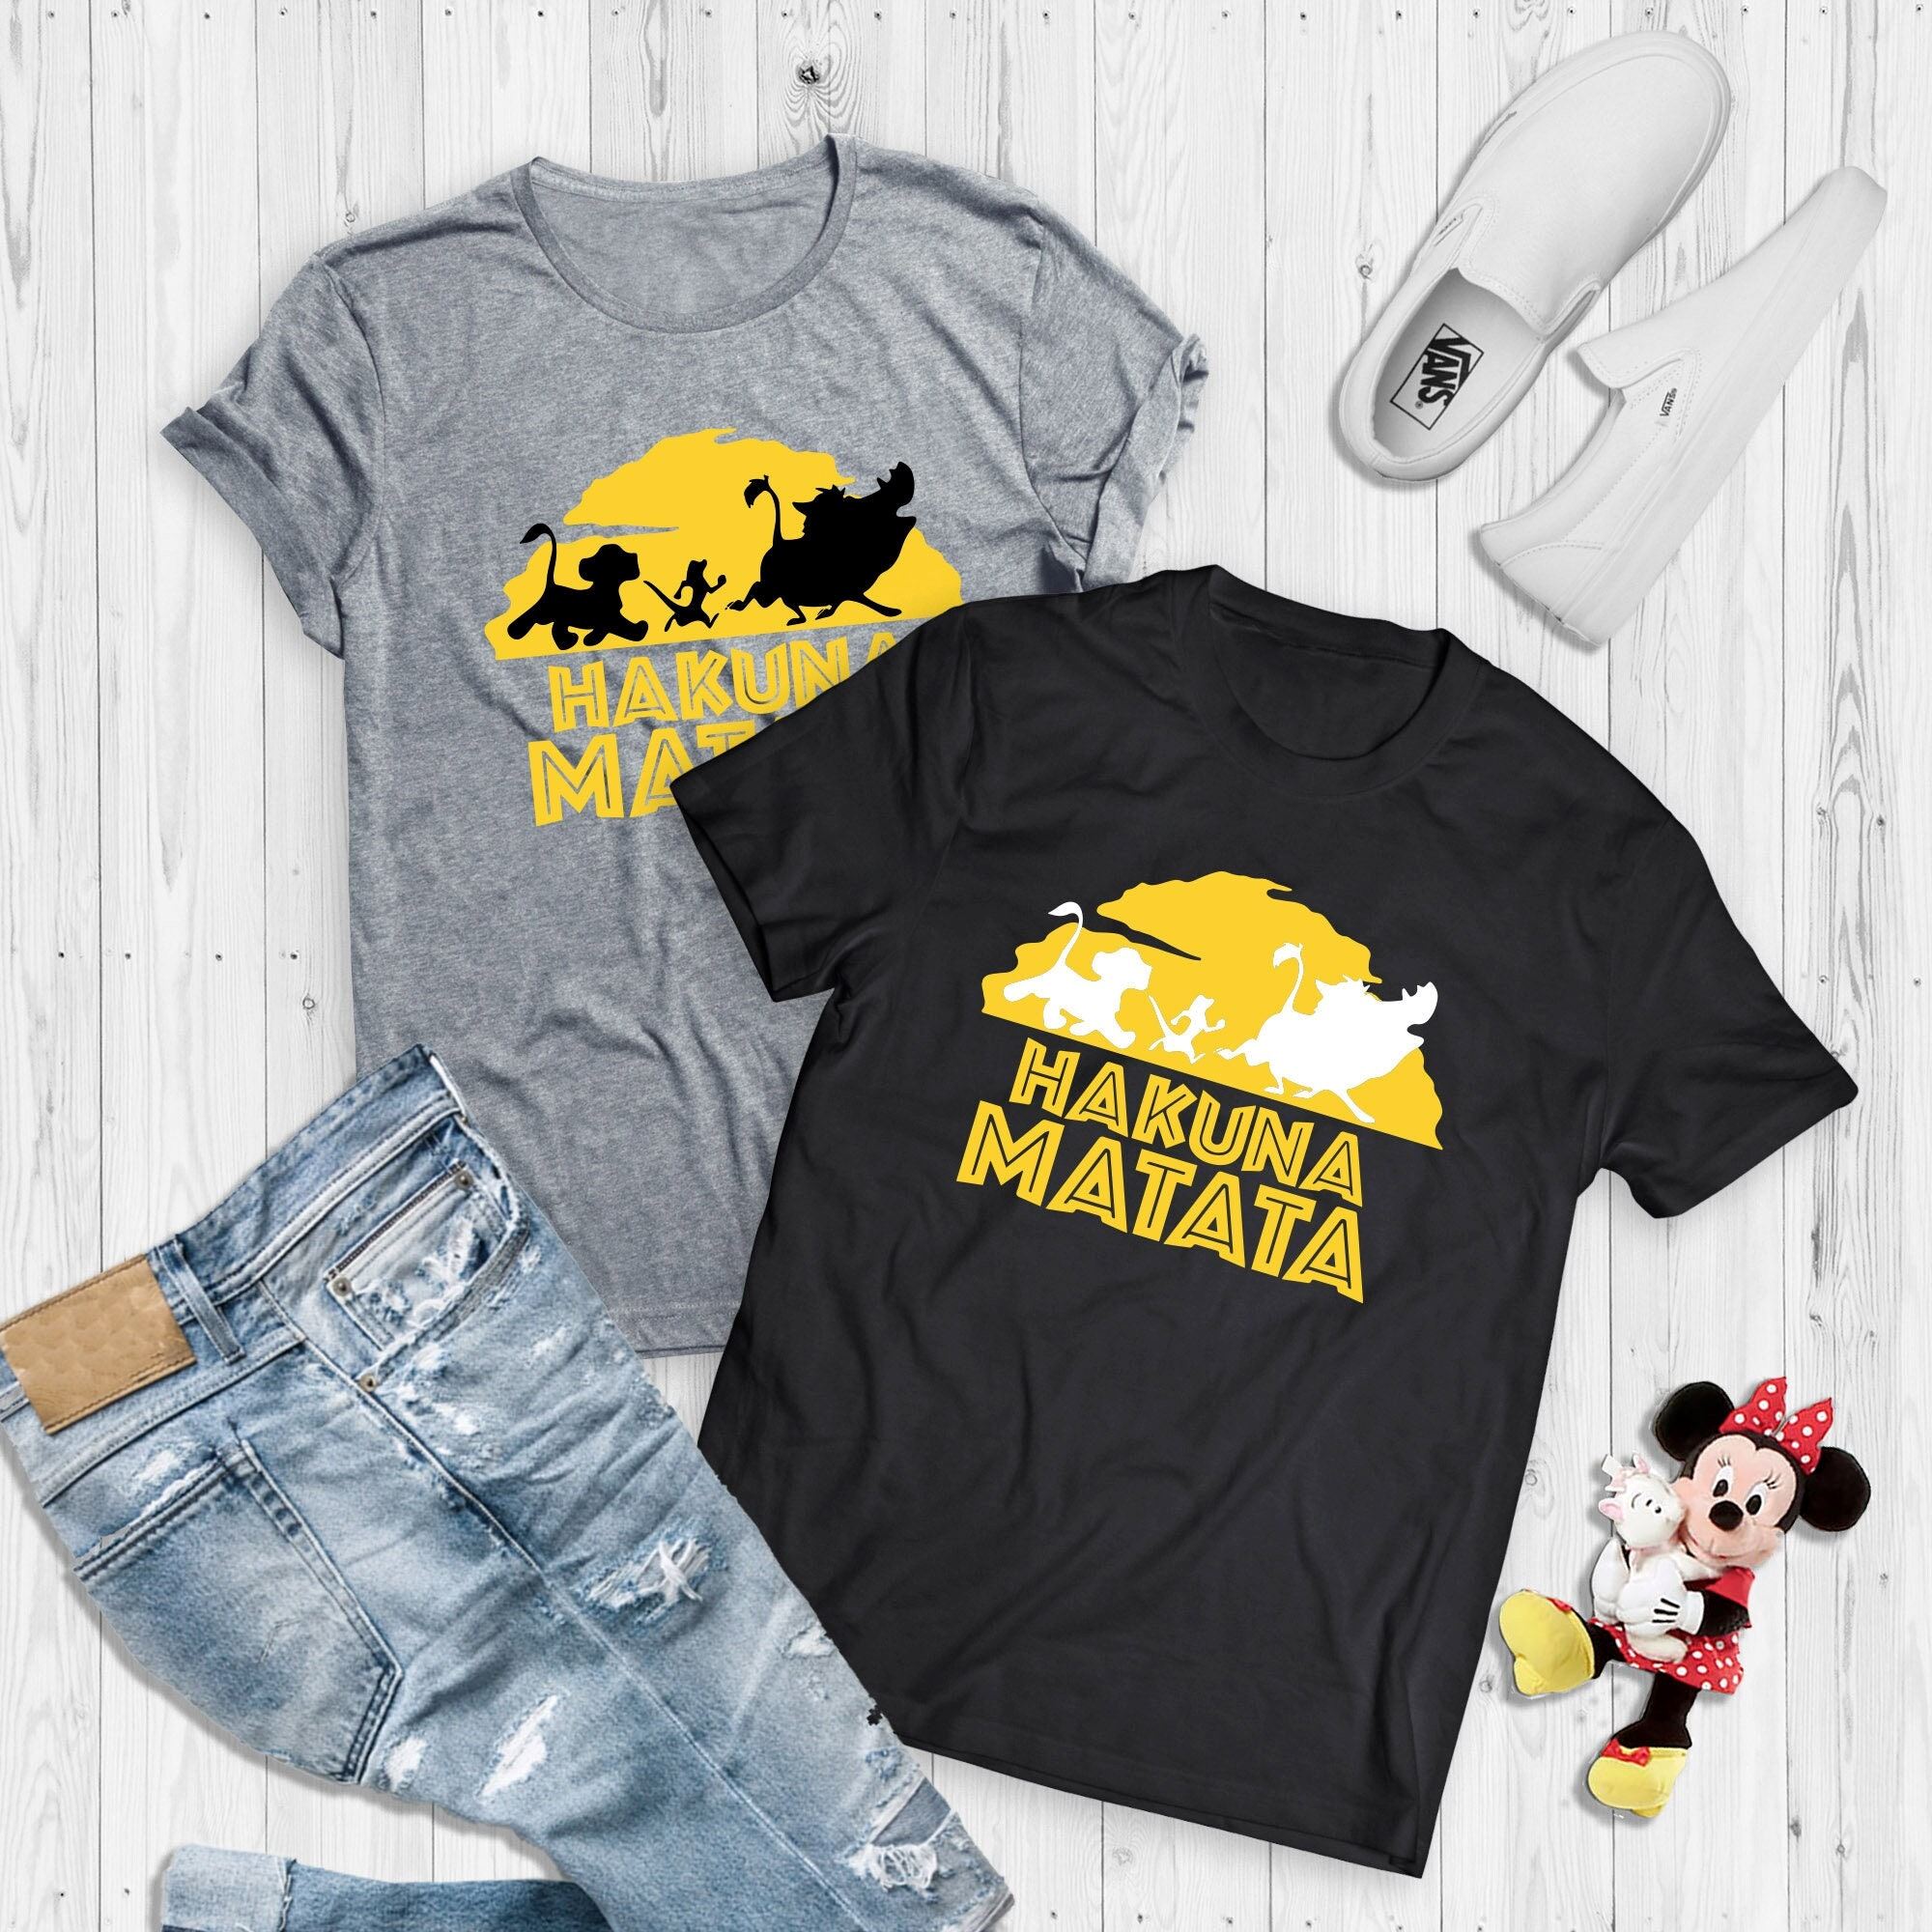 Happy Animal Kingdom Shirt Hakuna Matata T-shirt Animal Kingdom Tee Disney Family Shirts Family Vacation Shirt Family Matching Shirts 